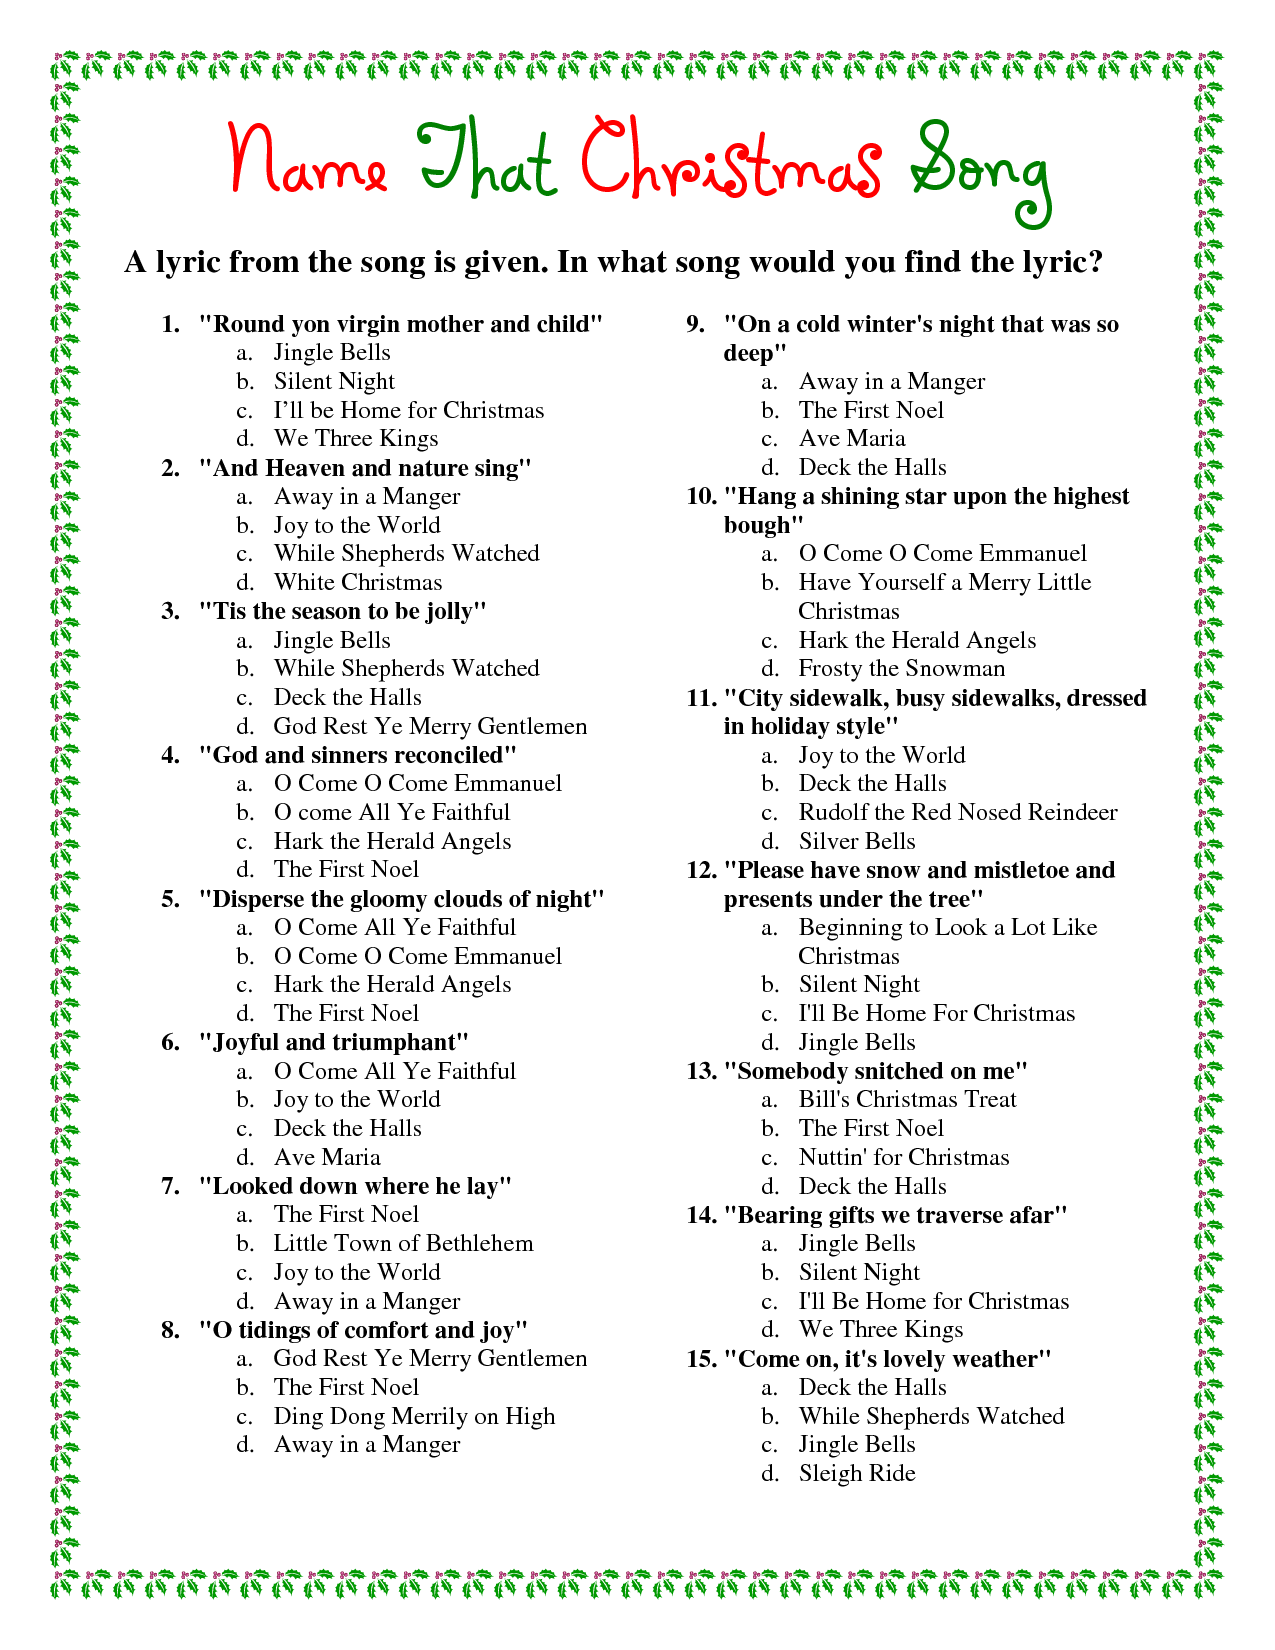 Free Printable Christmas Trivia Game | Christmas Song Trivia